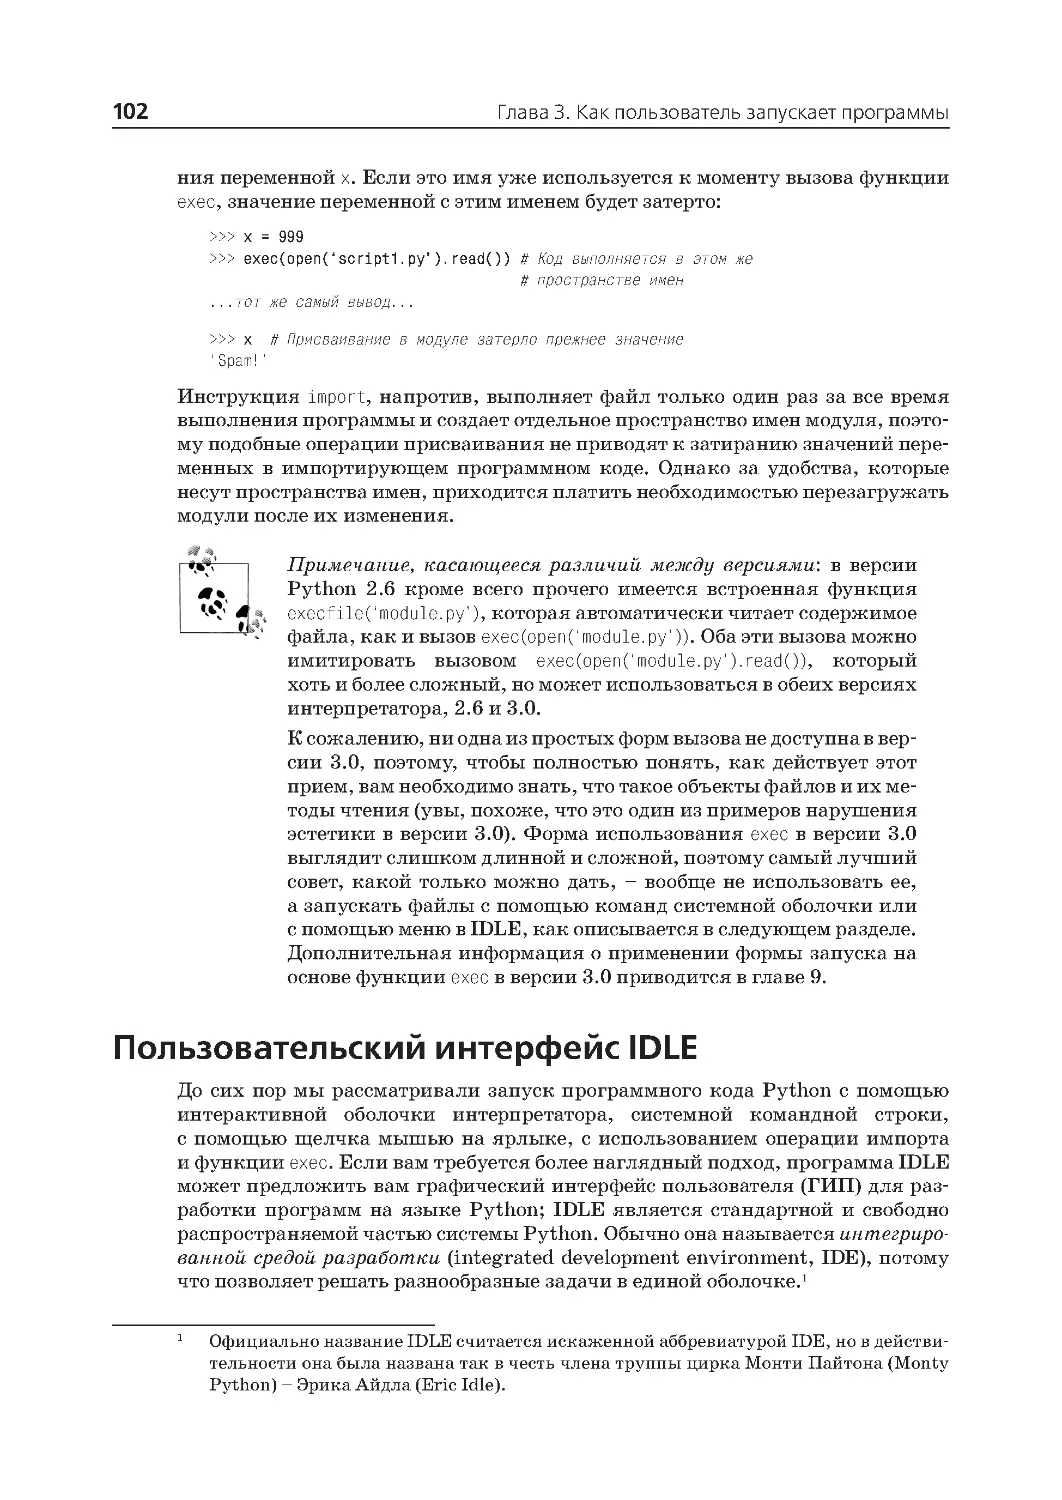 Пользовательский интерфейс IDLE